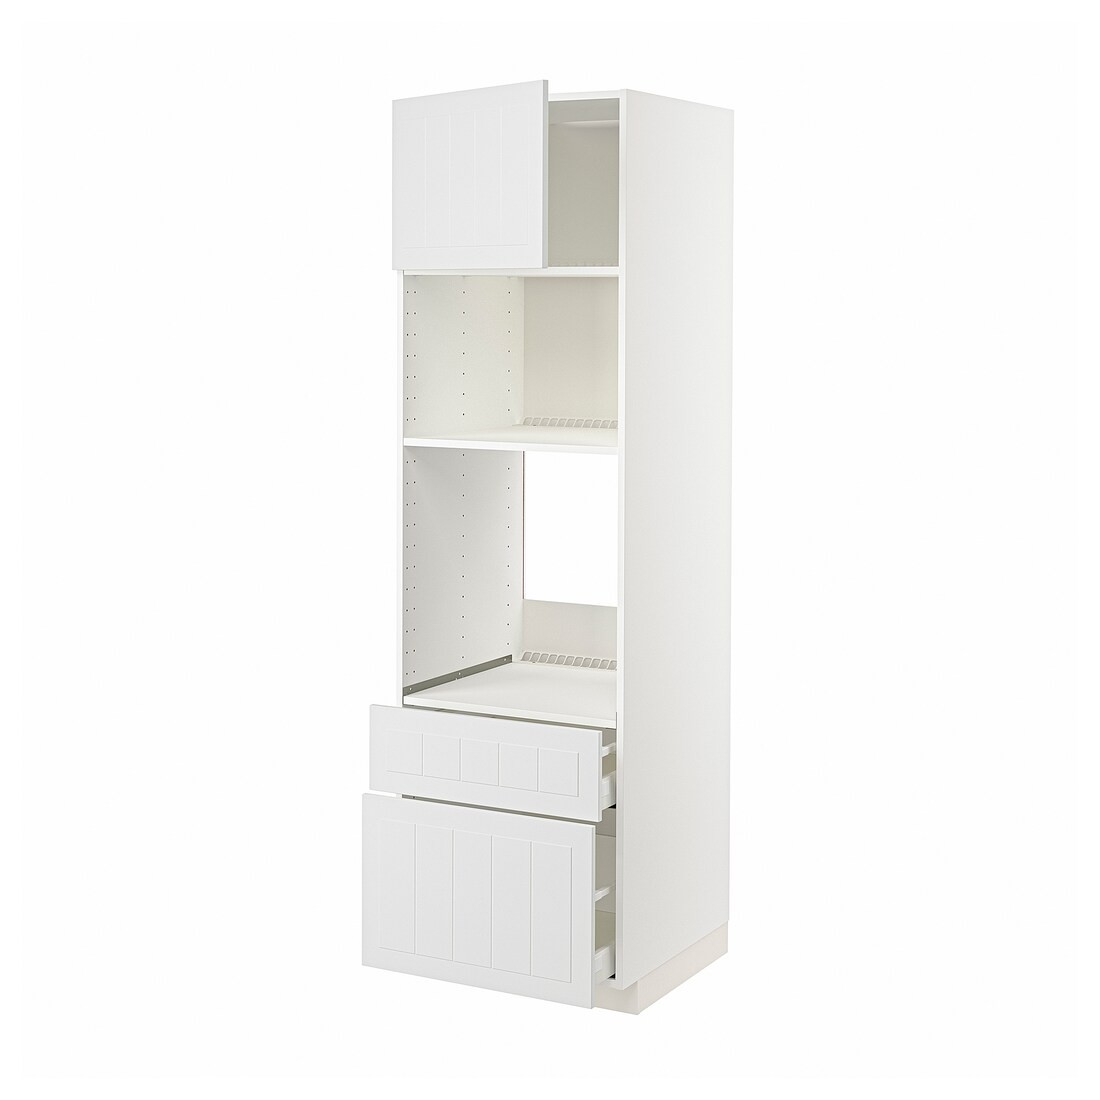 IKEA METOD МЕТОД / MAXIMERA МАКСИМЕРА Высокий шкаф для духовки / микроволновки с дверями / 2 ящиками, белый / Stensund белый, 60x60x200 см 59457035 | 594.570.35